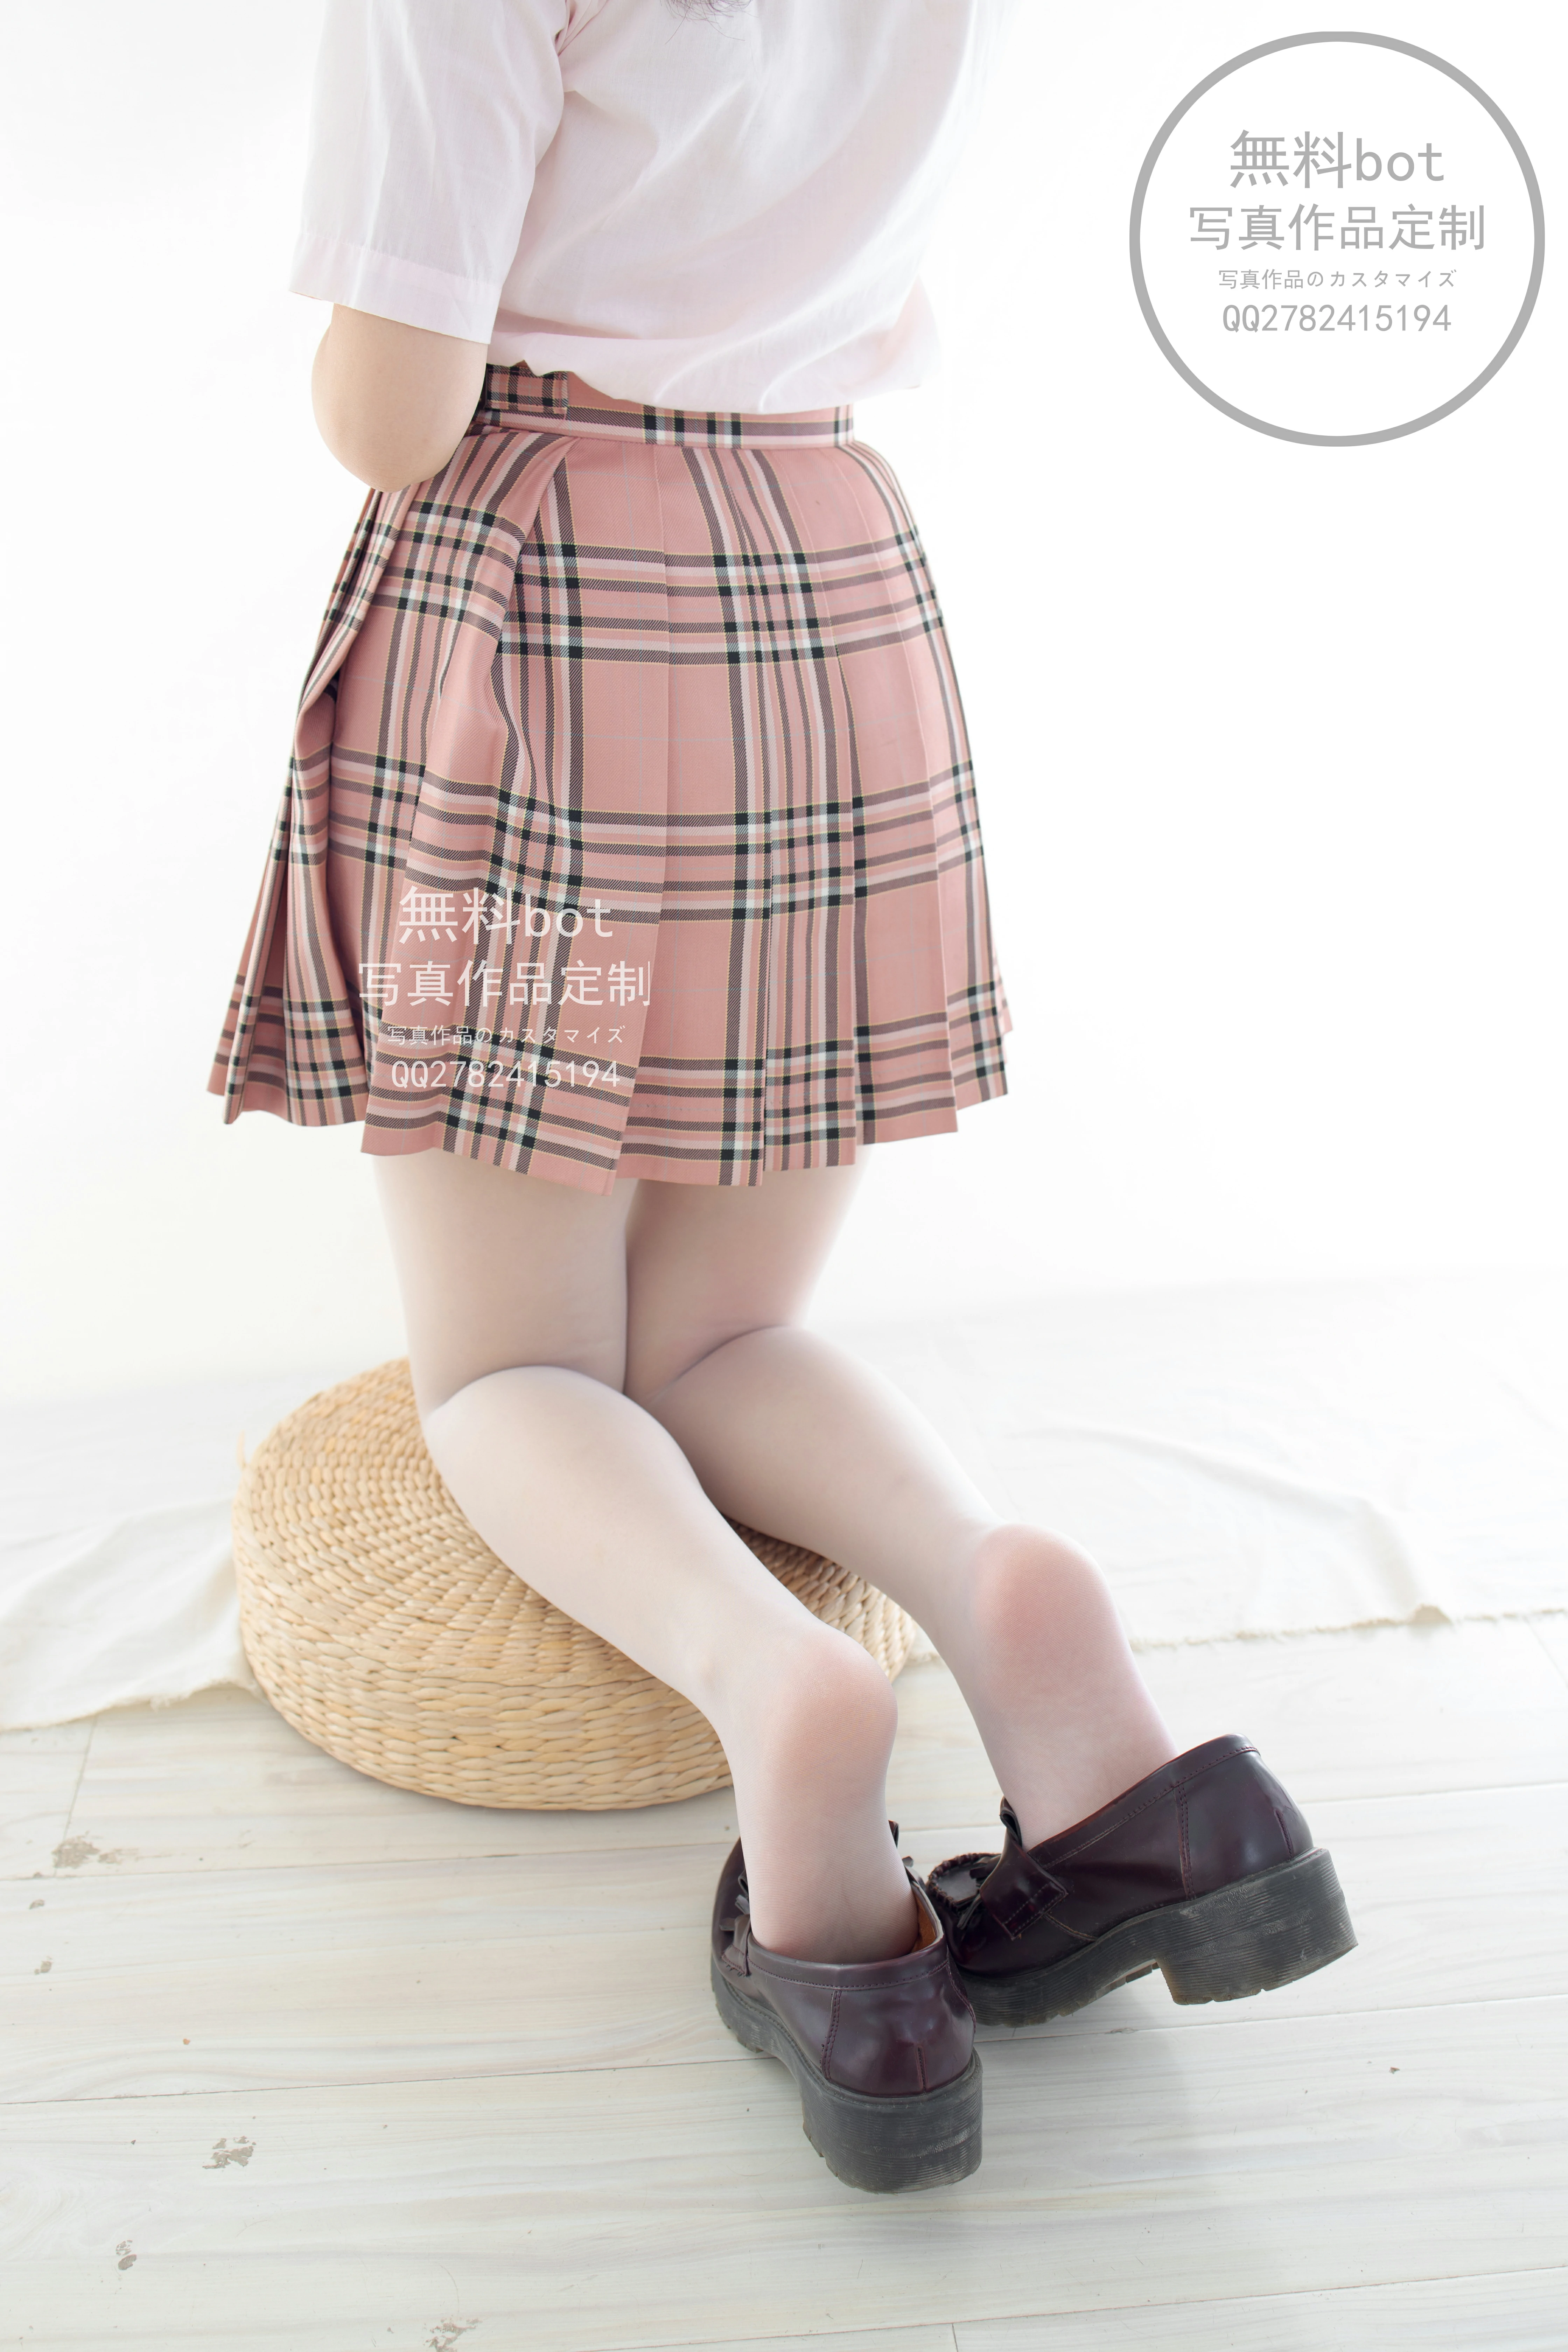 [森萝财团]無料001 清纯少女小萝莉 粉色JK制服与短裙加白色丝袜美腿性感私房写真集,